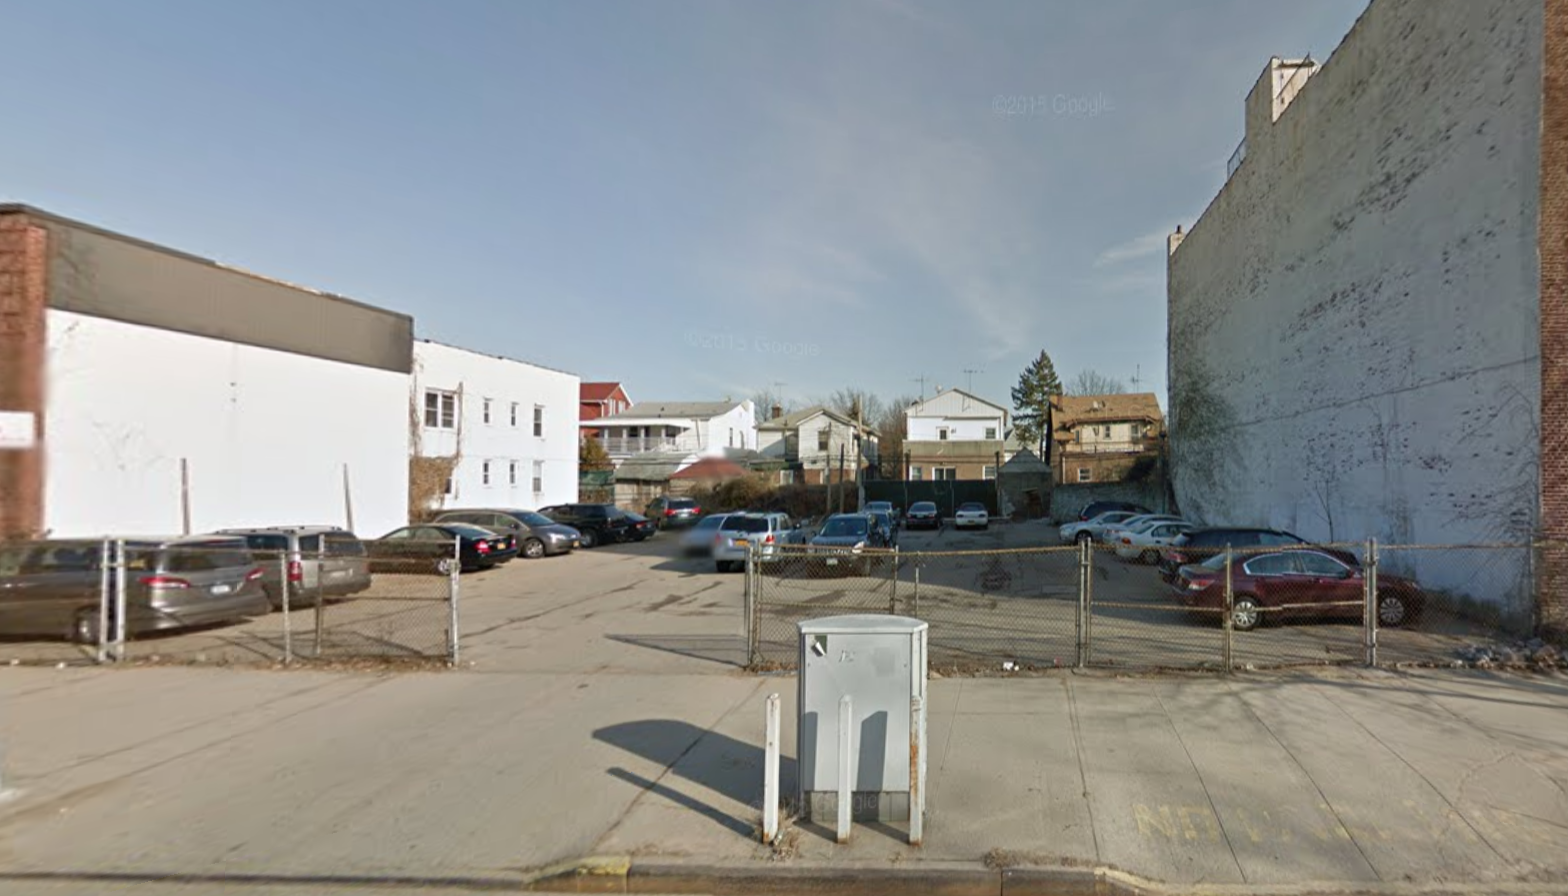 51 West End Avenue, image via Google Maps